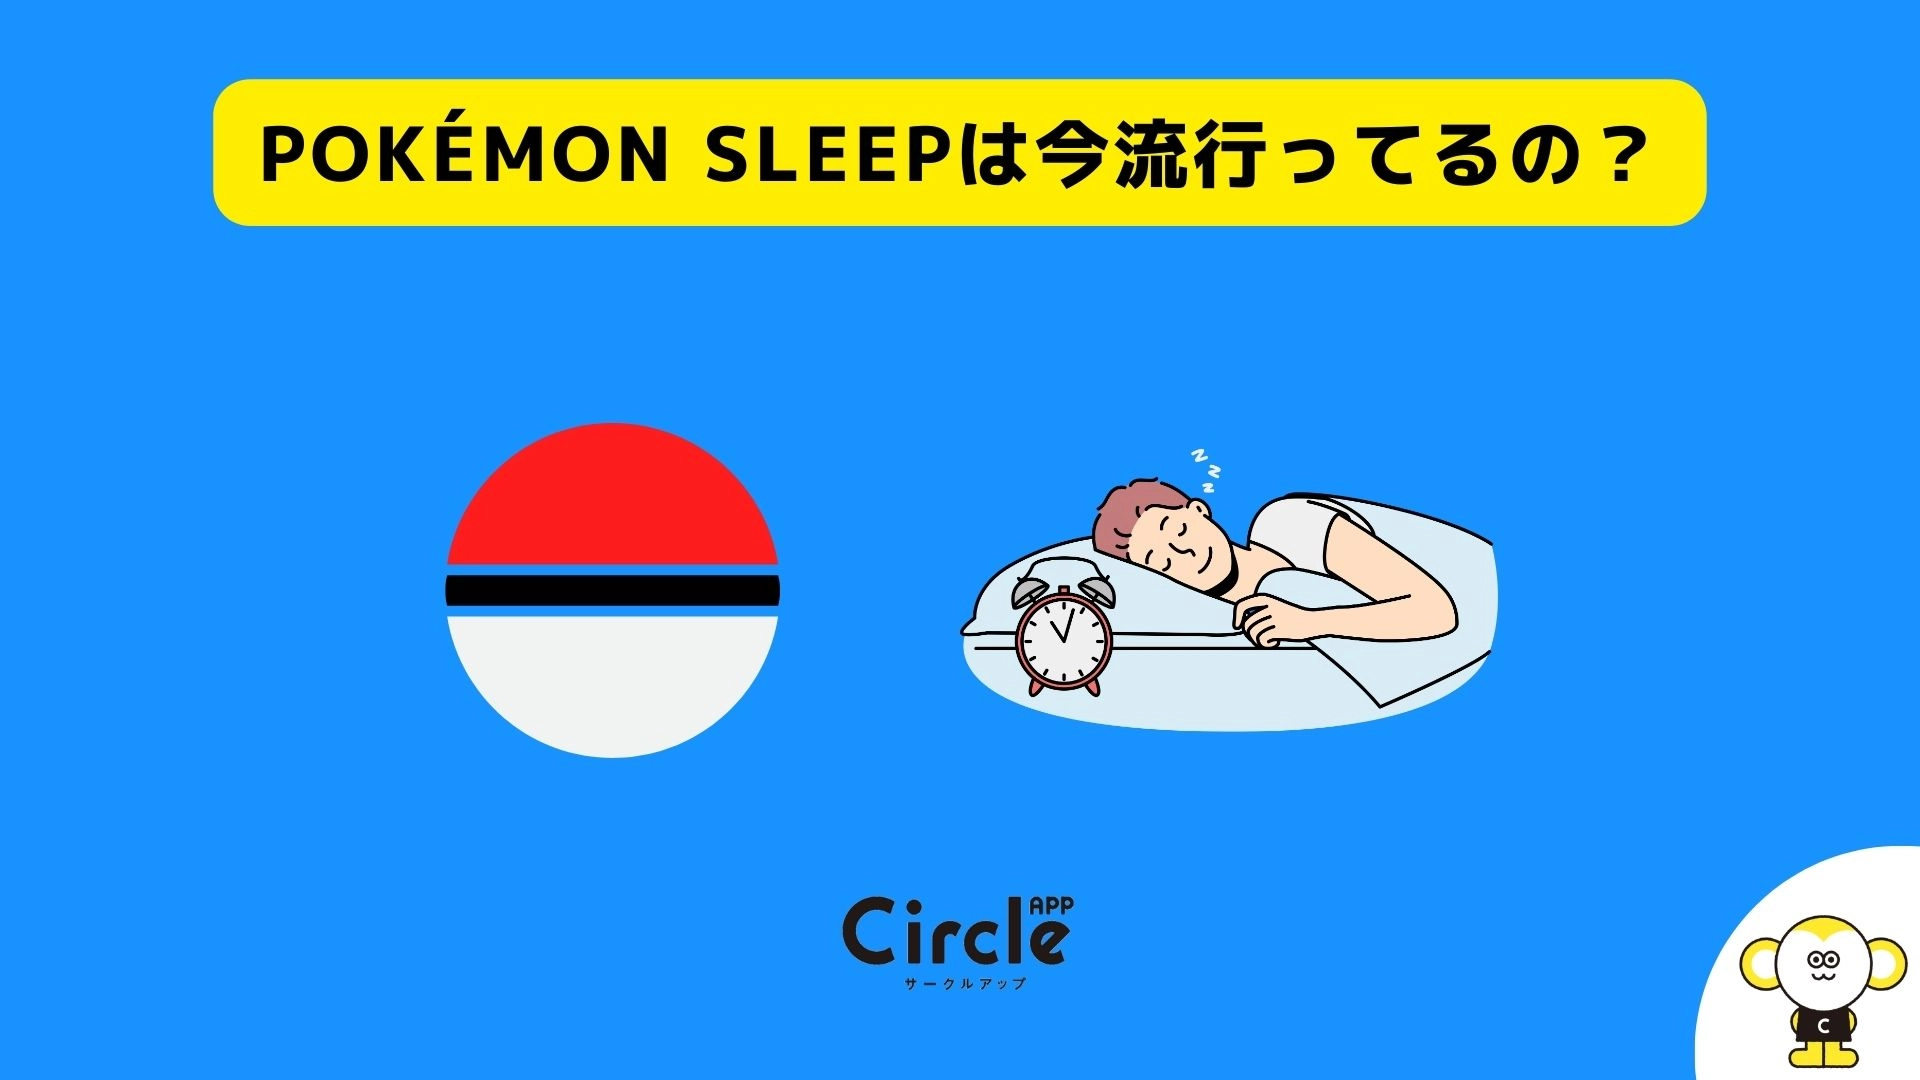 話題の睡眠アプリ「Pokémon Sleep（ポケモンスリープ）」、現役大学生の利用経験率は26.0%。現在も利用中は10.5%。